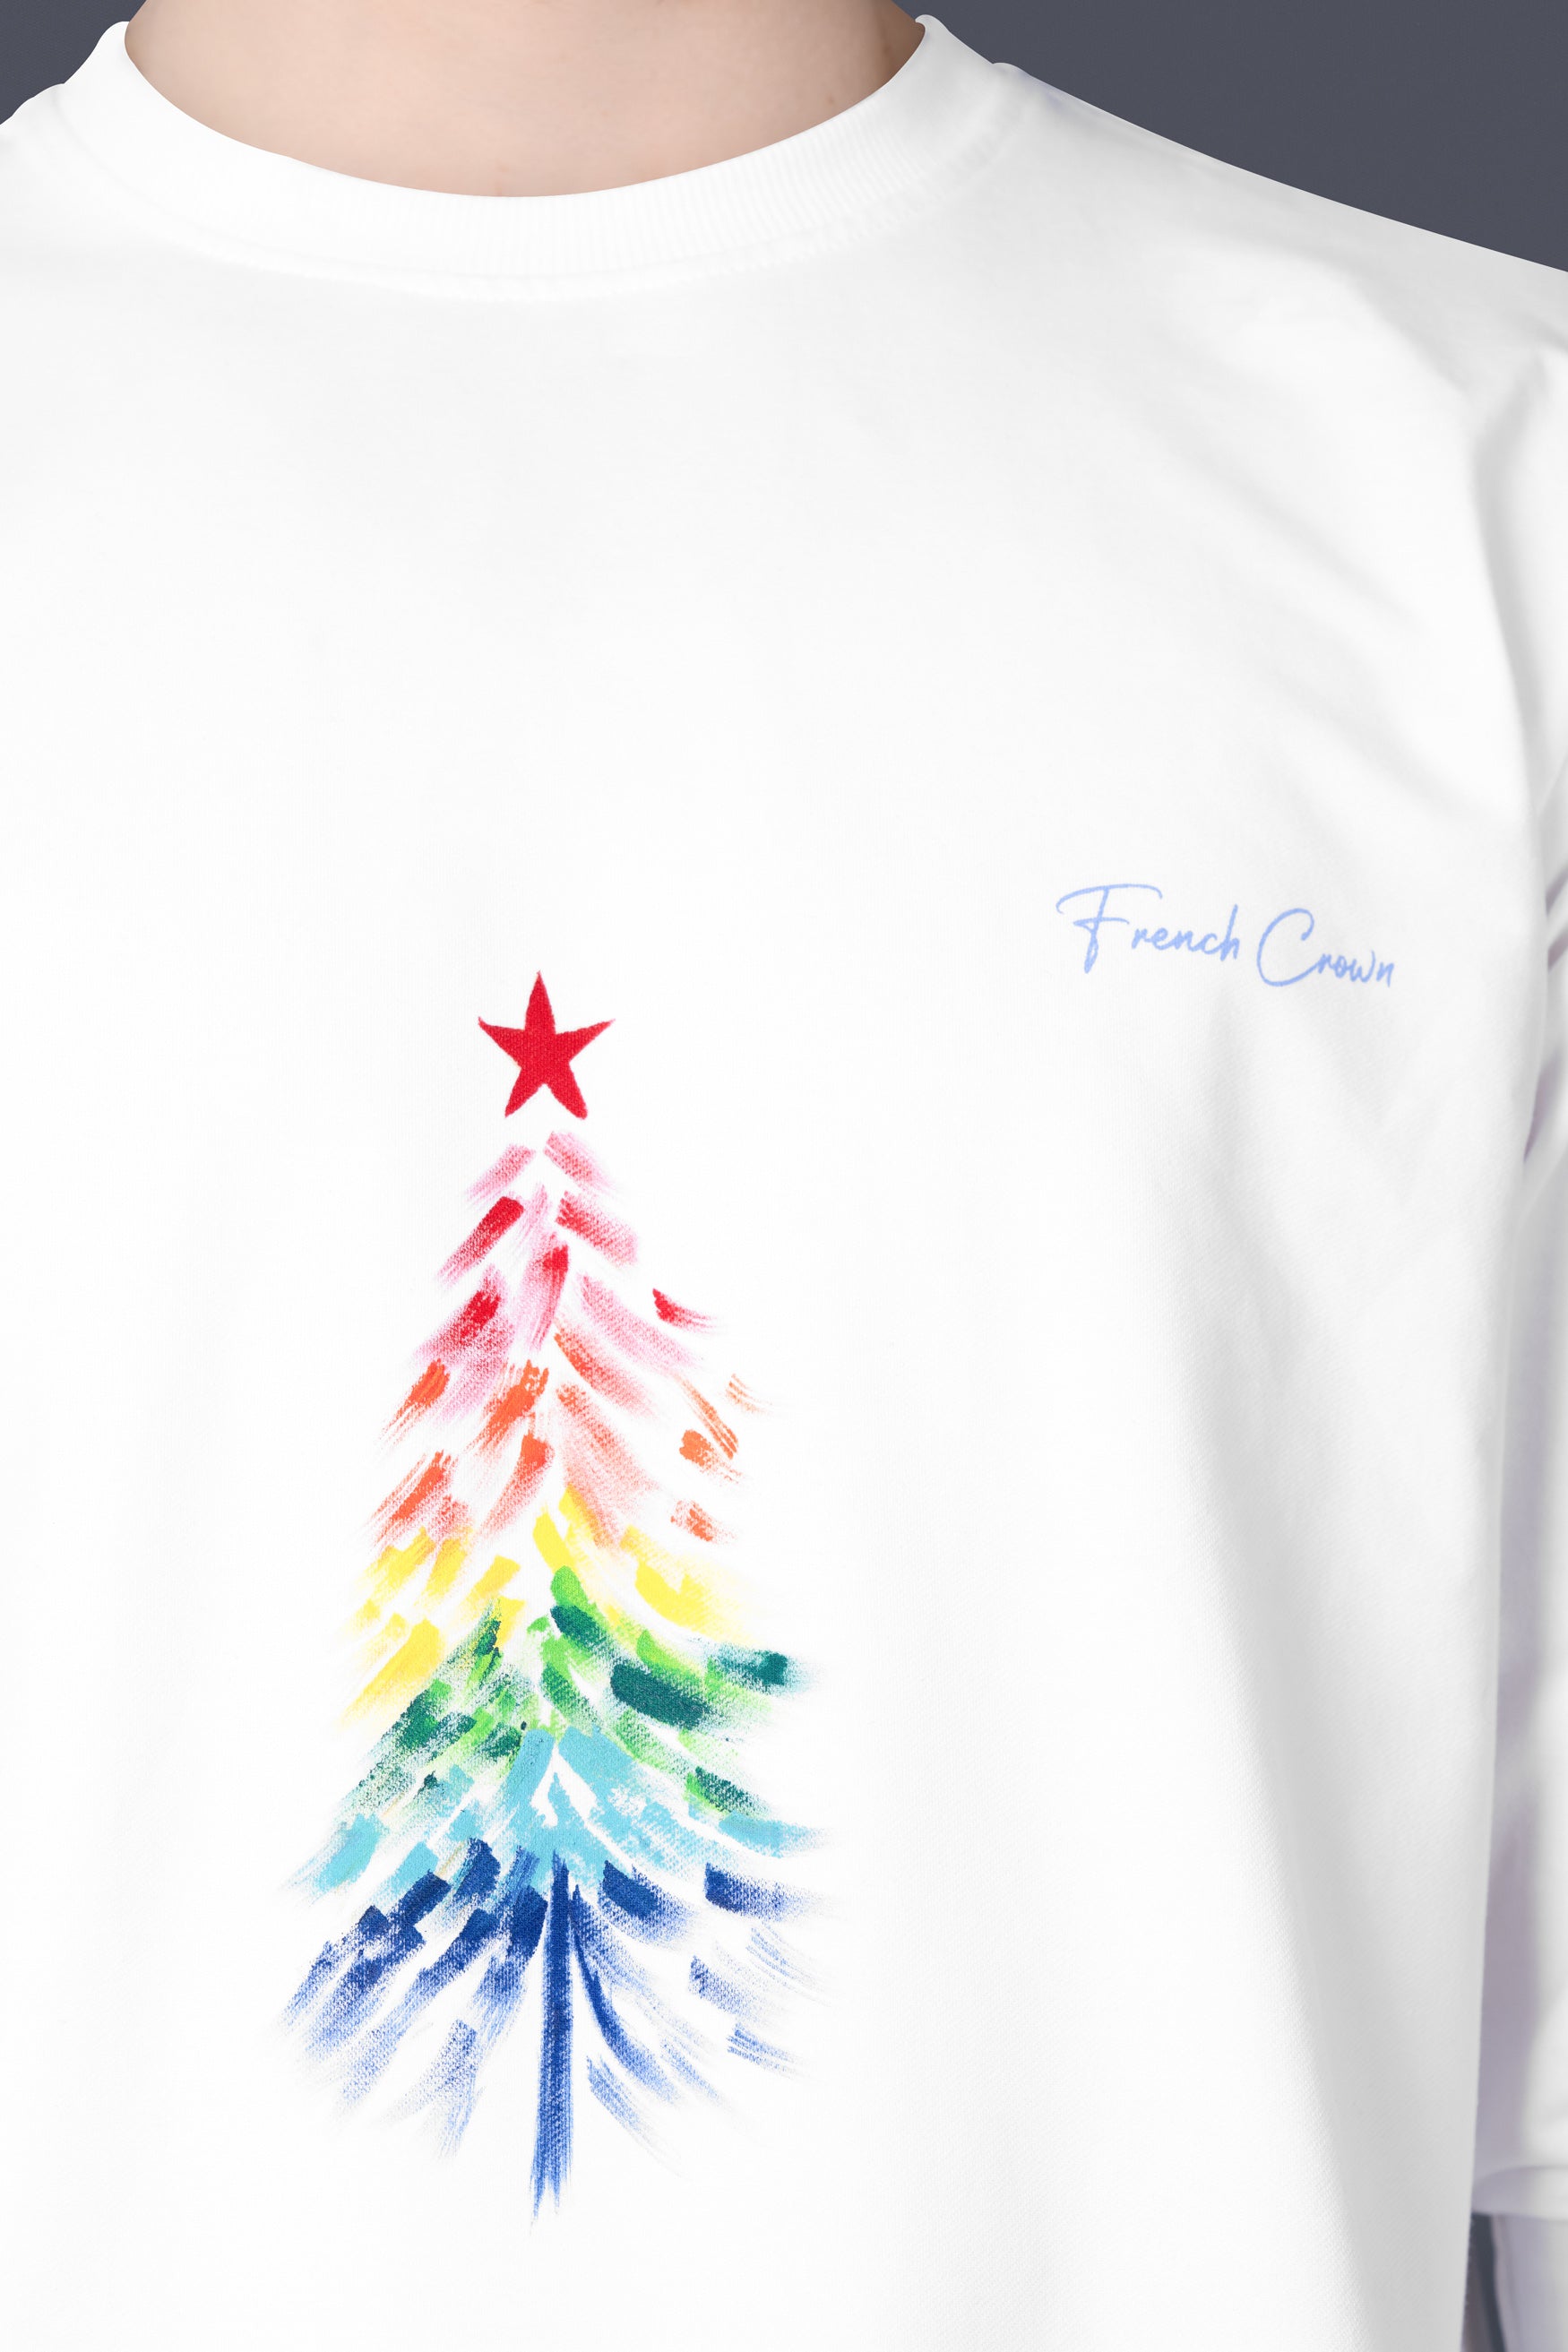 Bright White Christmas Tree Hand Painted Premium Cotton Sweatshirt